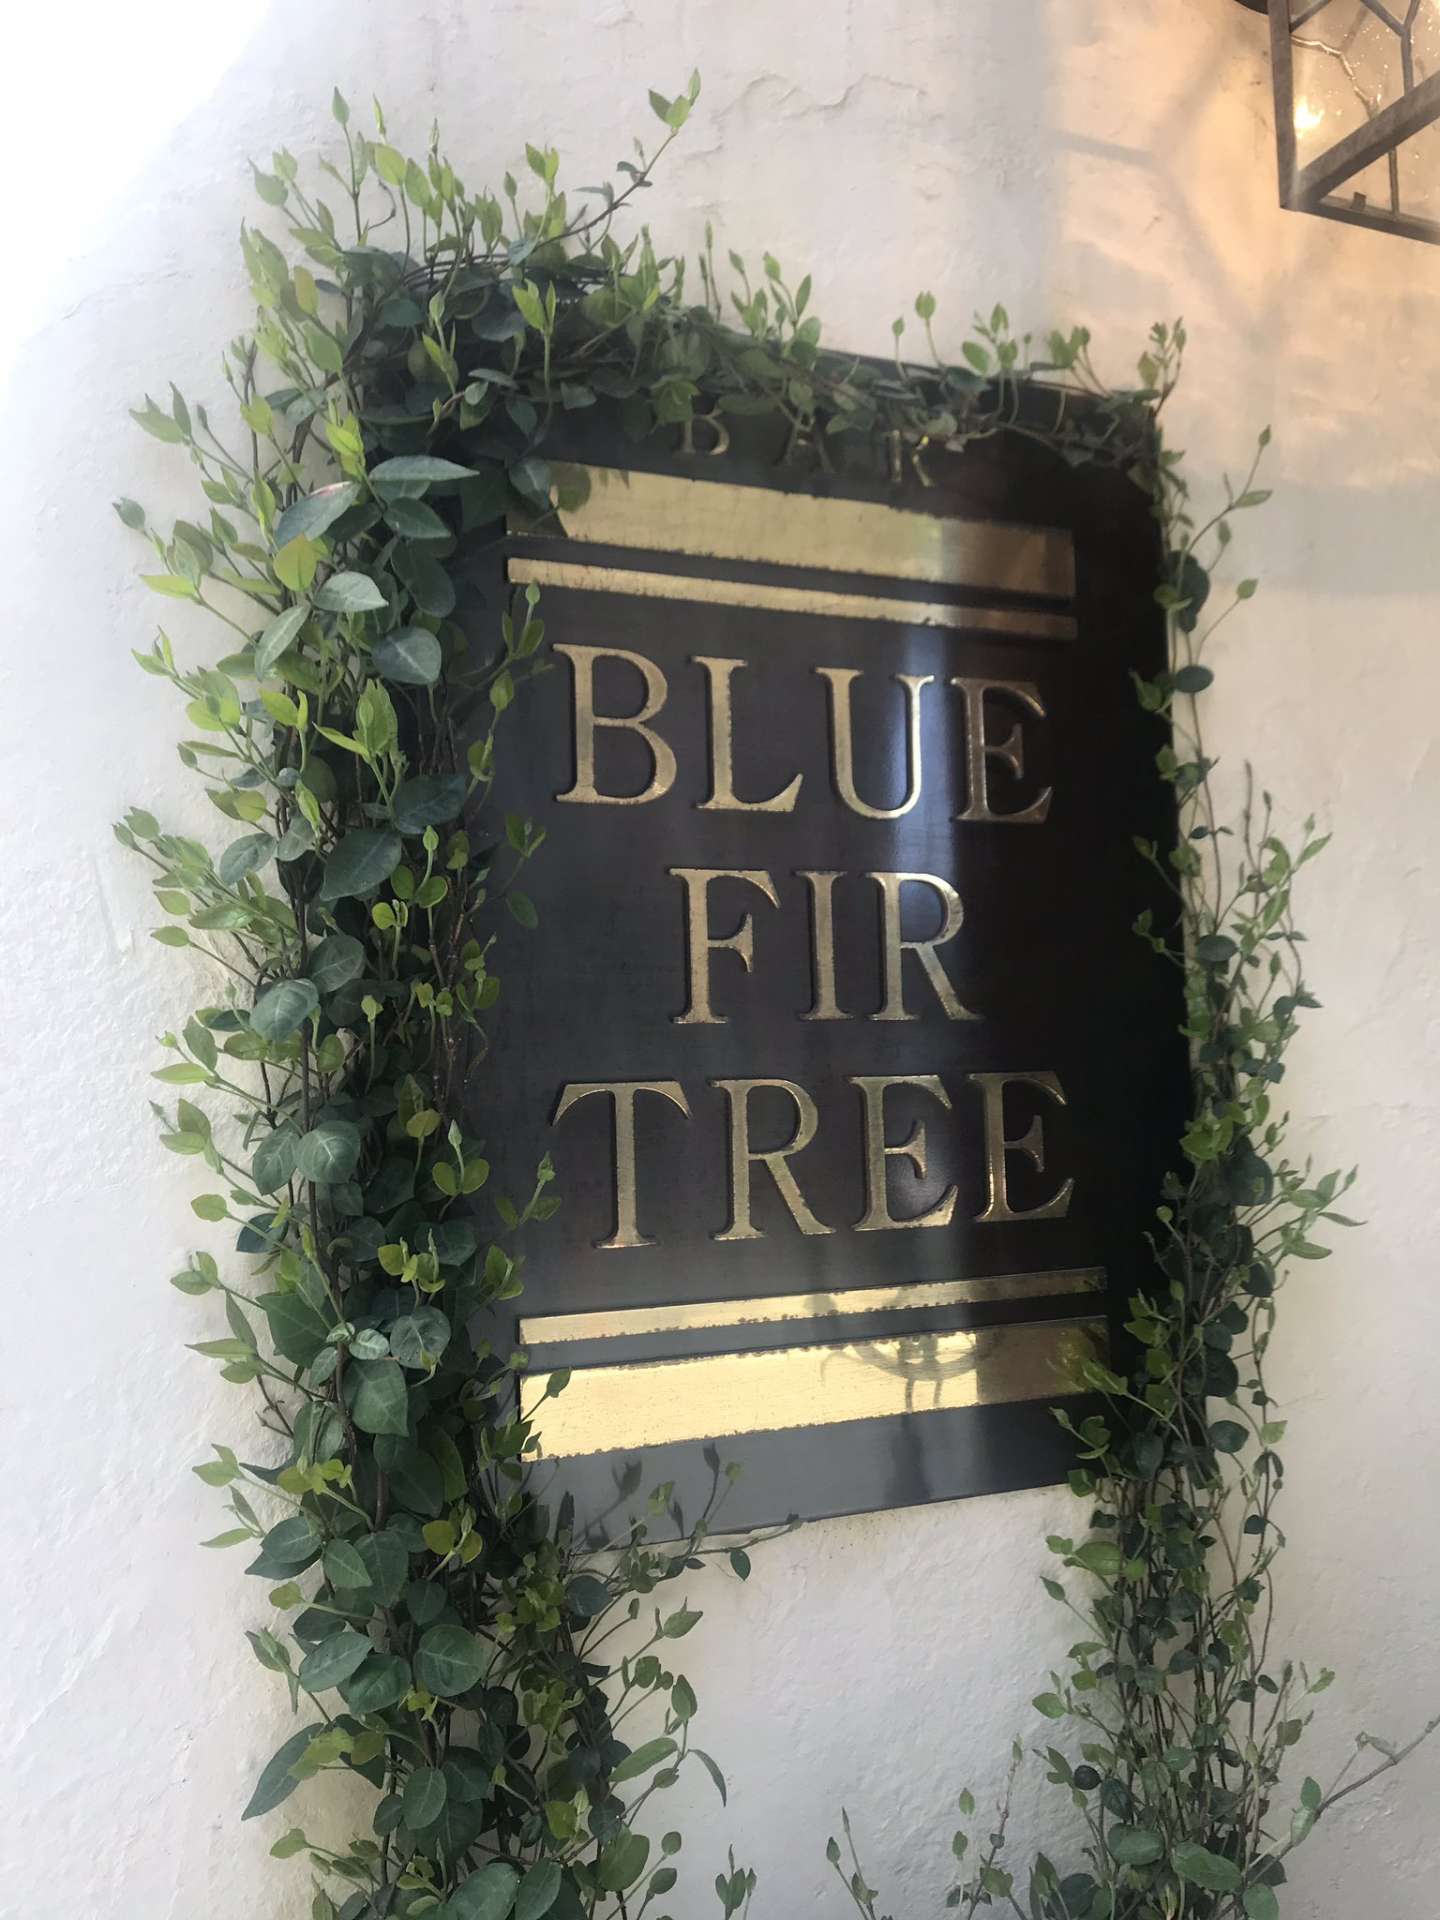 BLUE FIR TREE